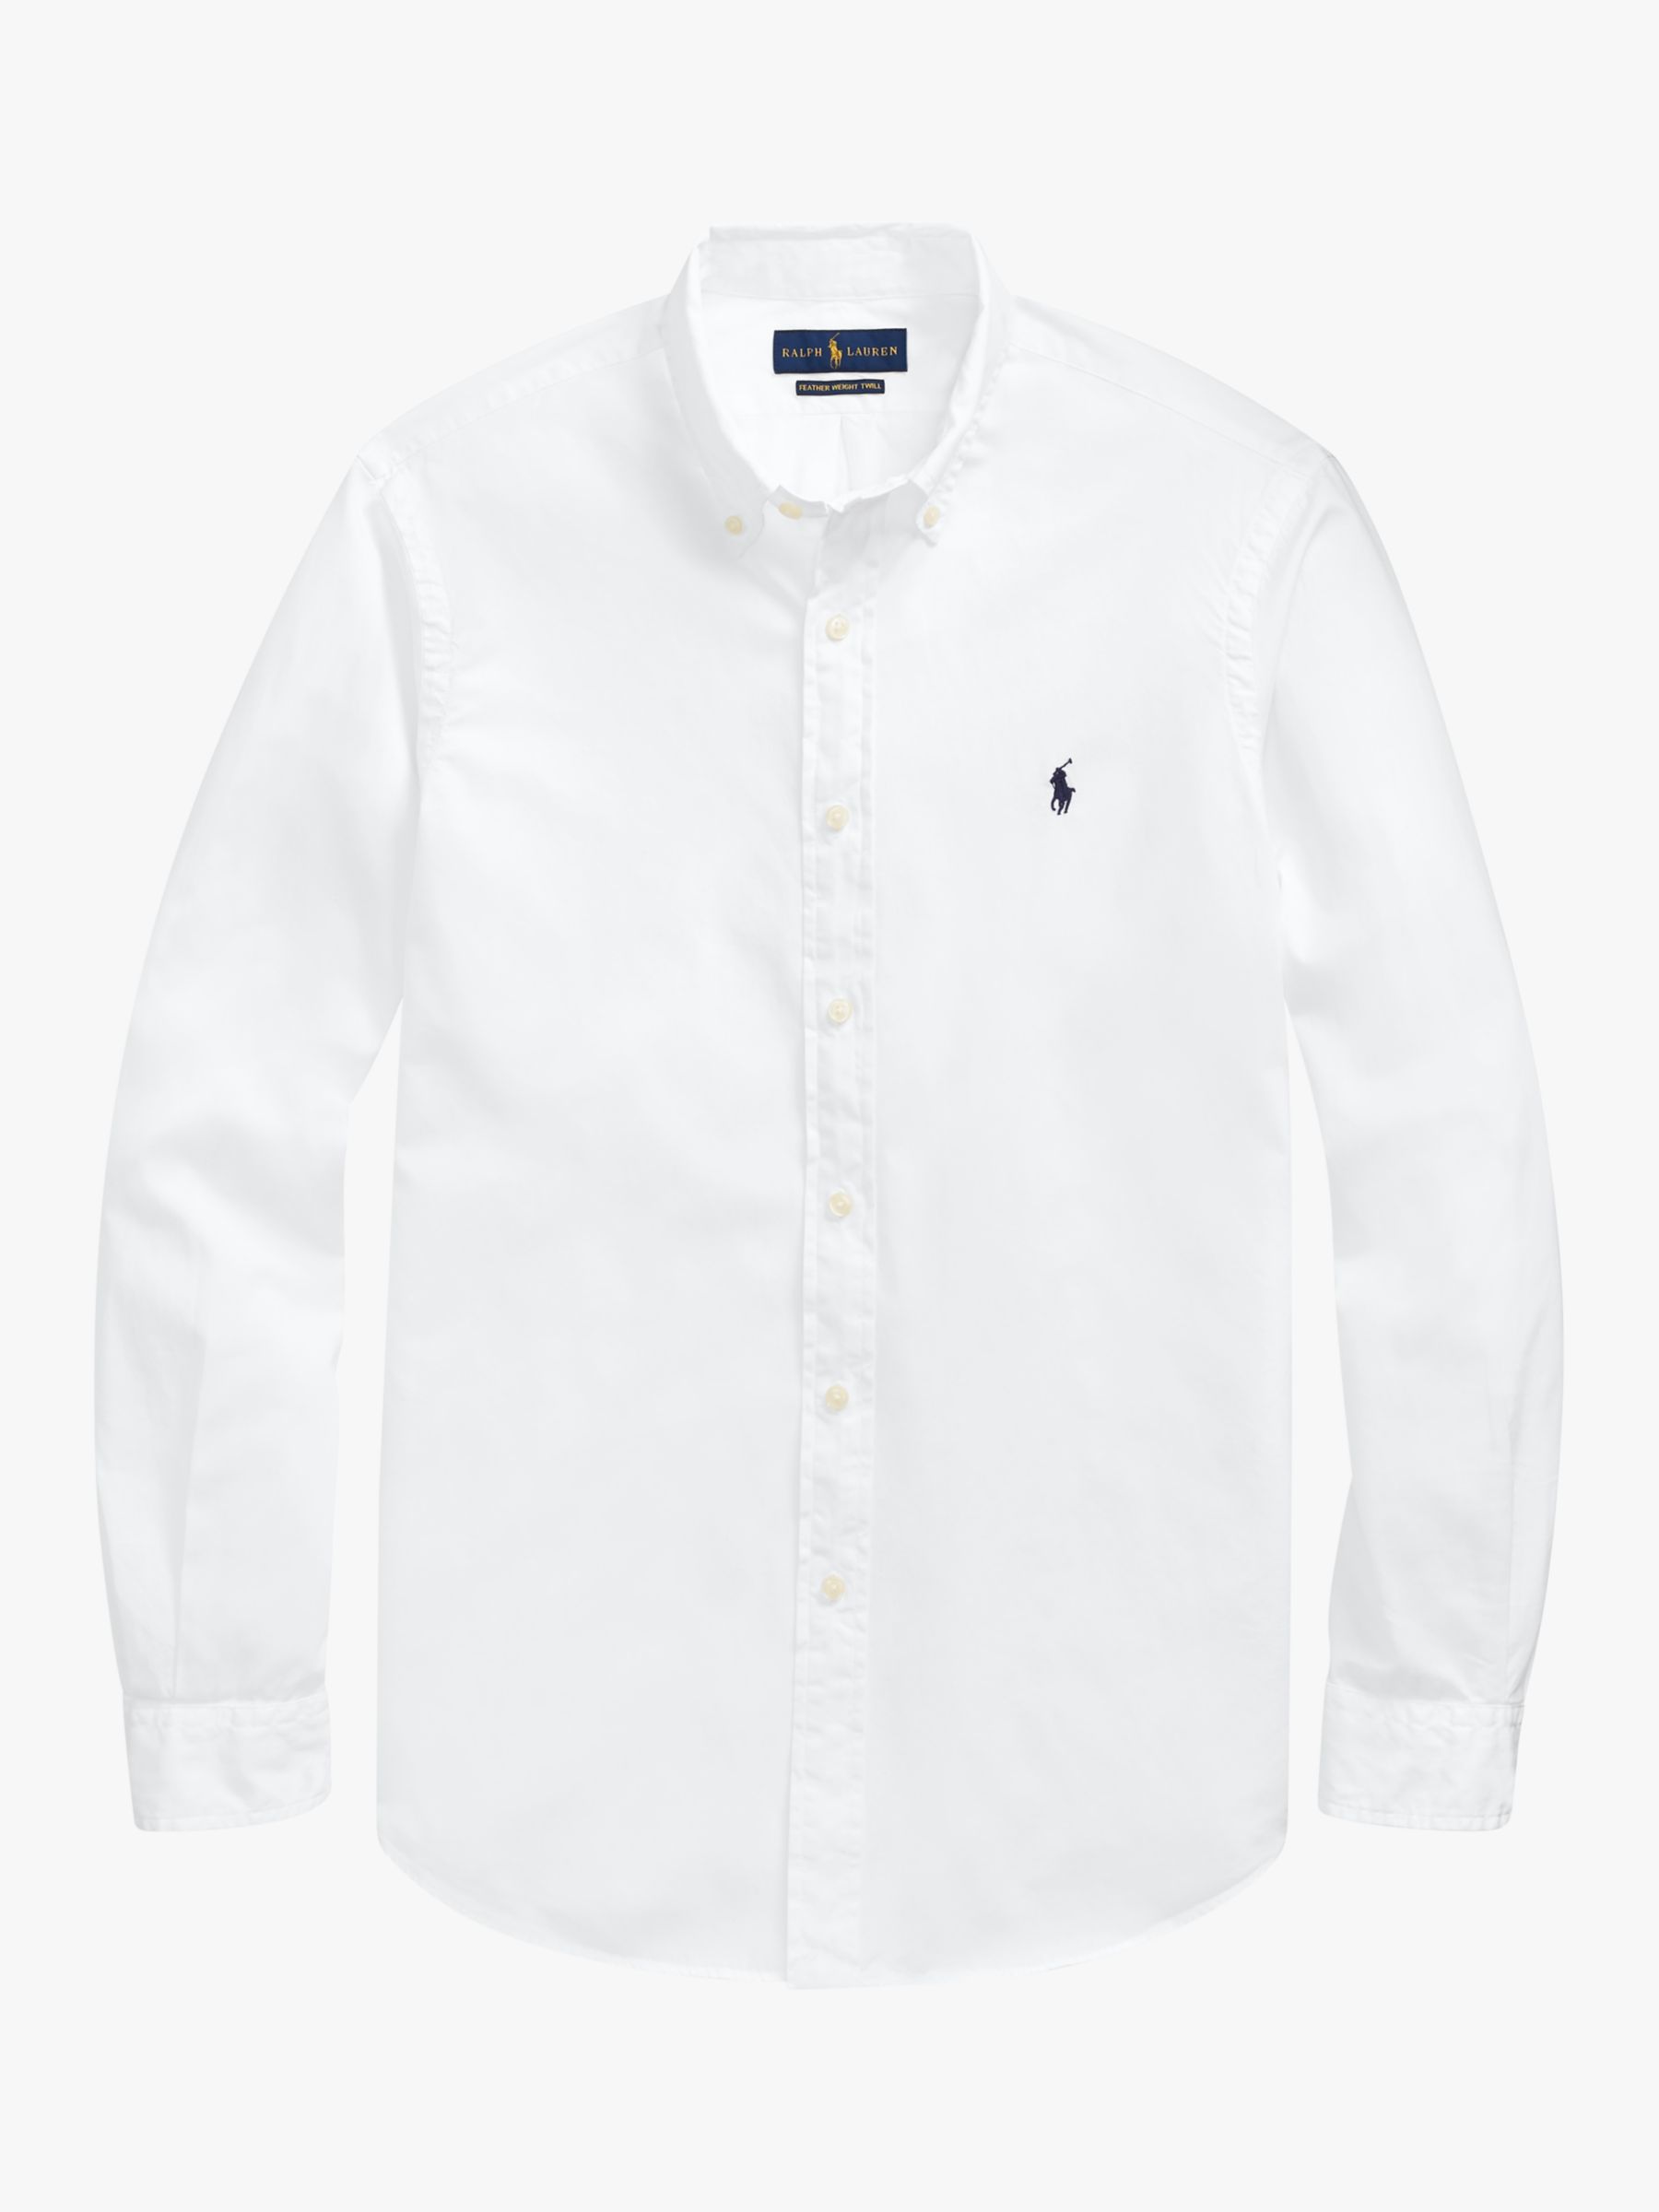 ralph white shirt